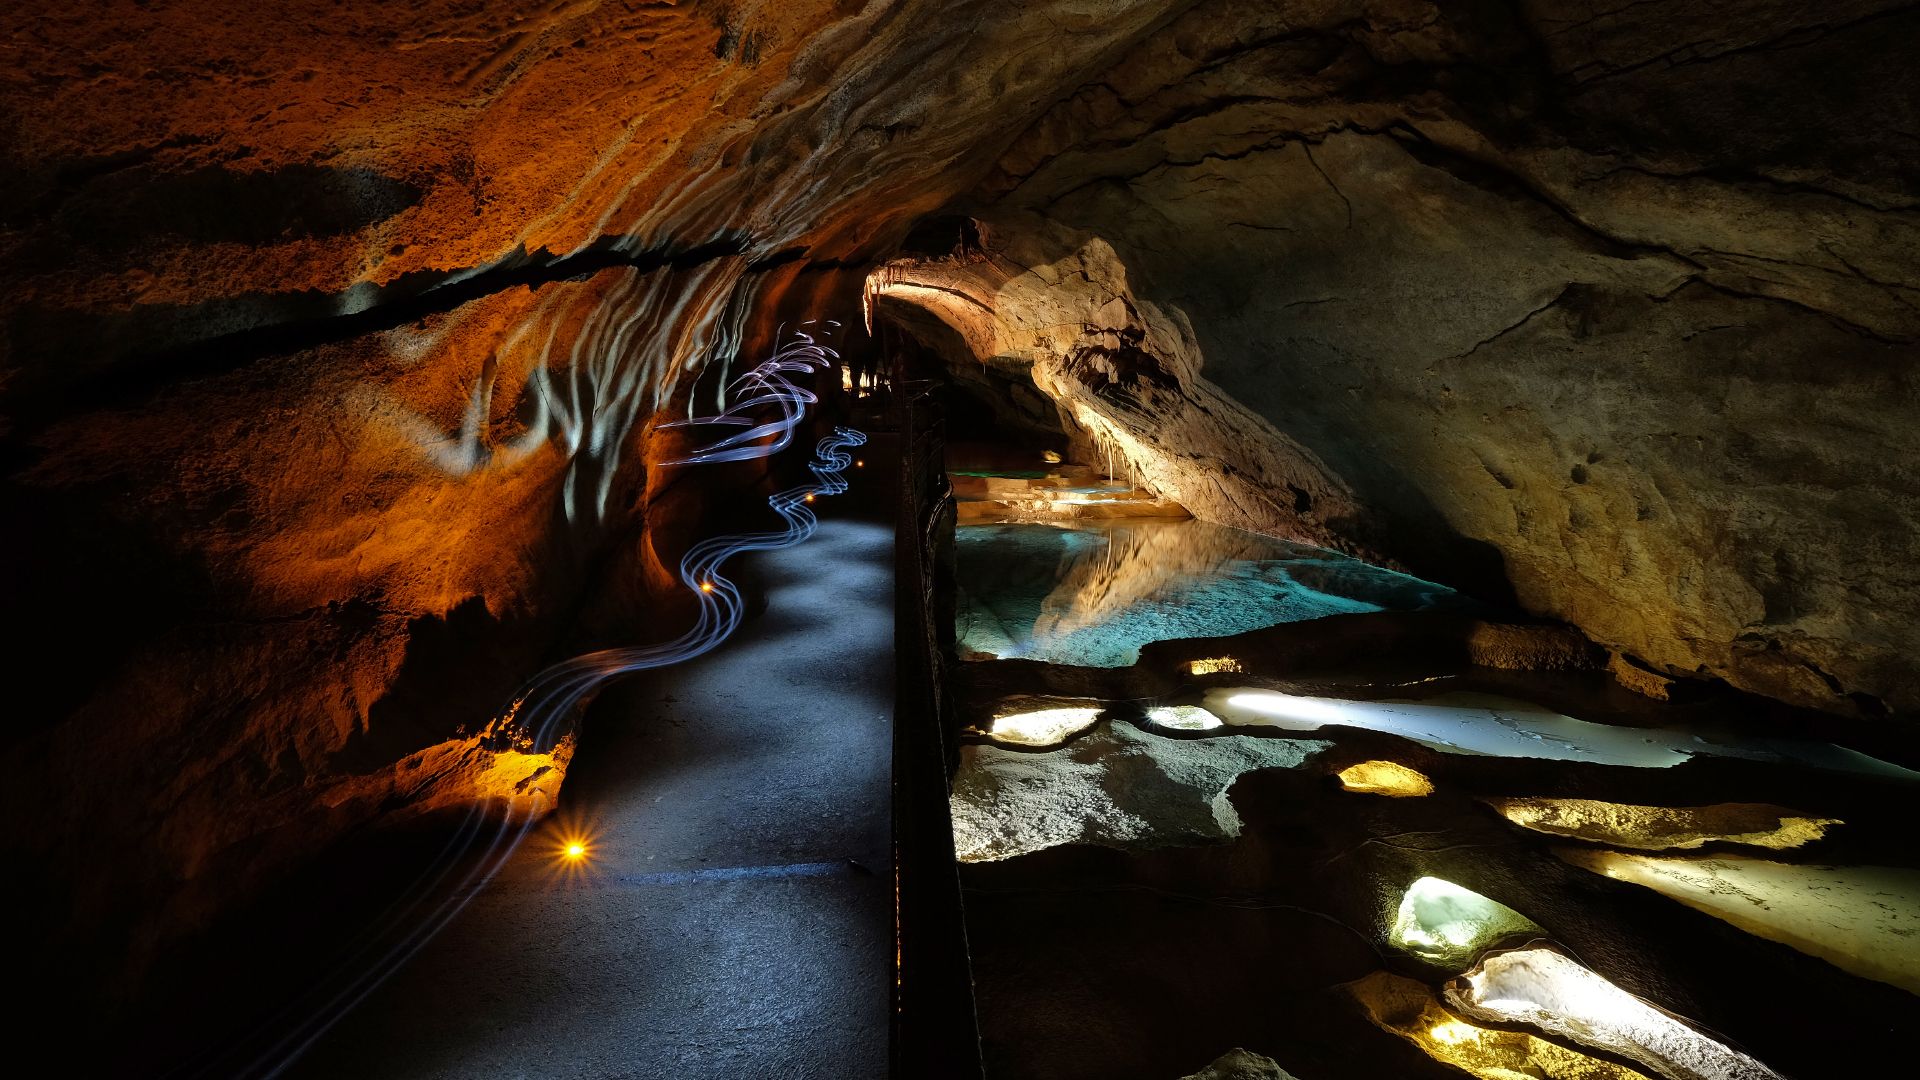 (c) Grotte-cocaliere.com